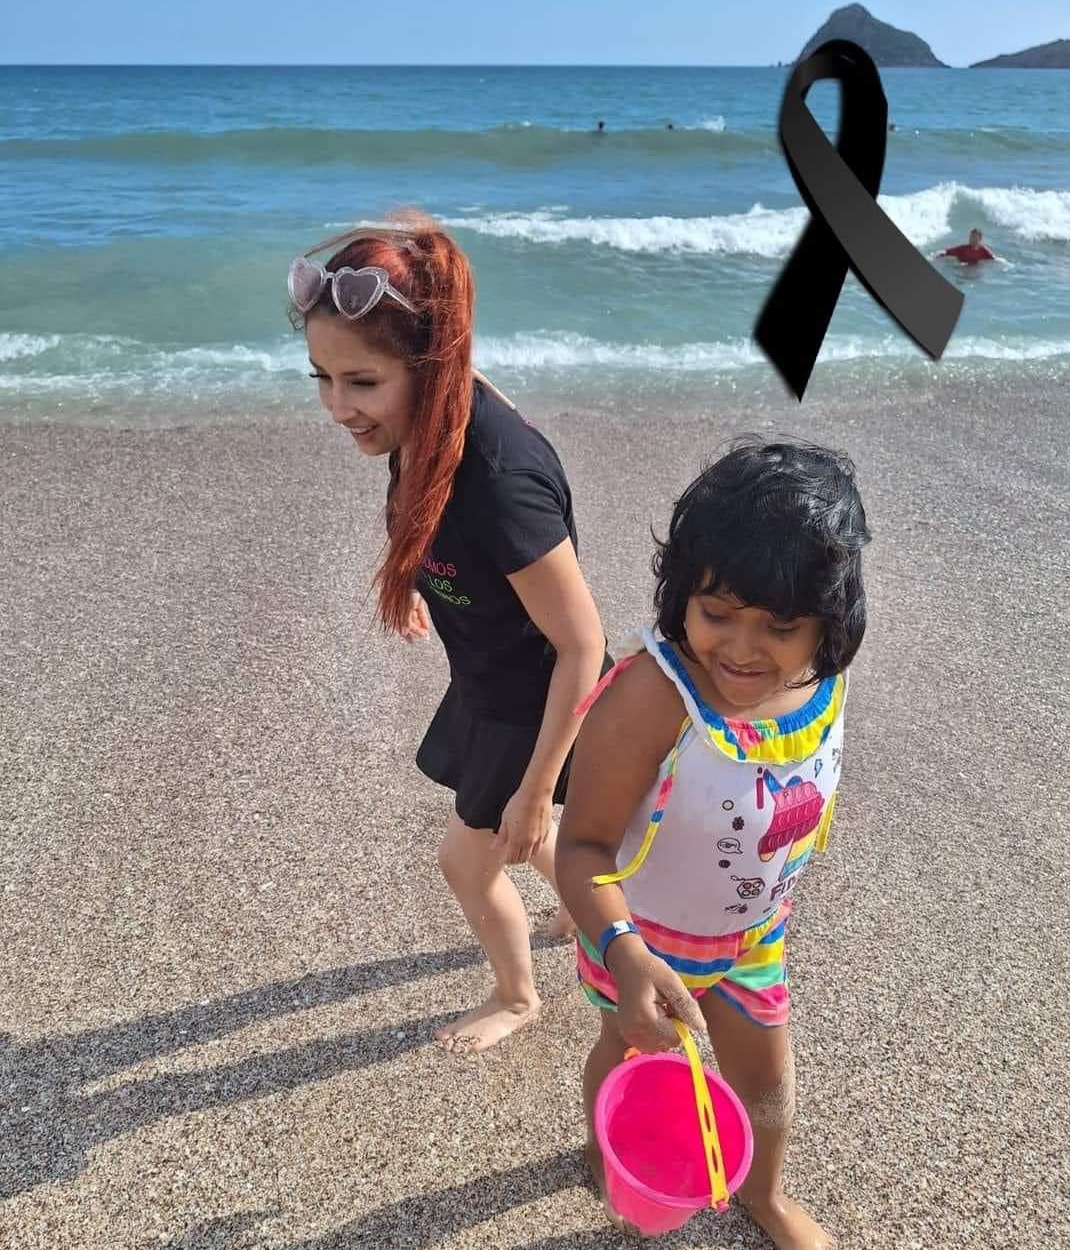 Luisa quien padecía cancer, pudo conocer el mar antes de fallecer